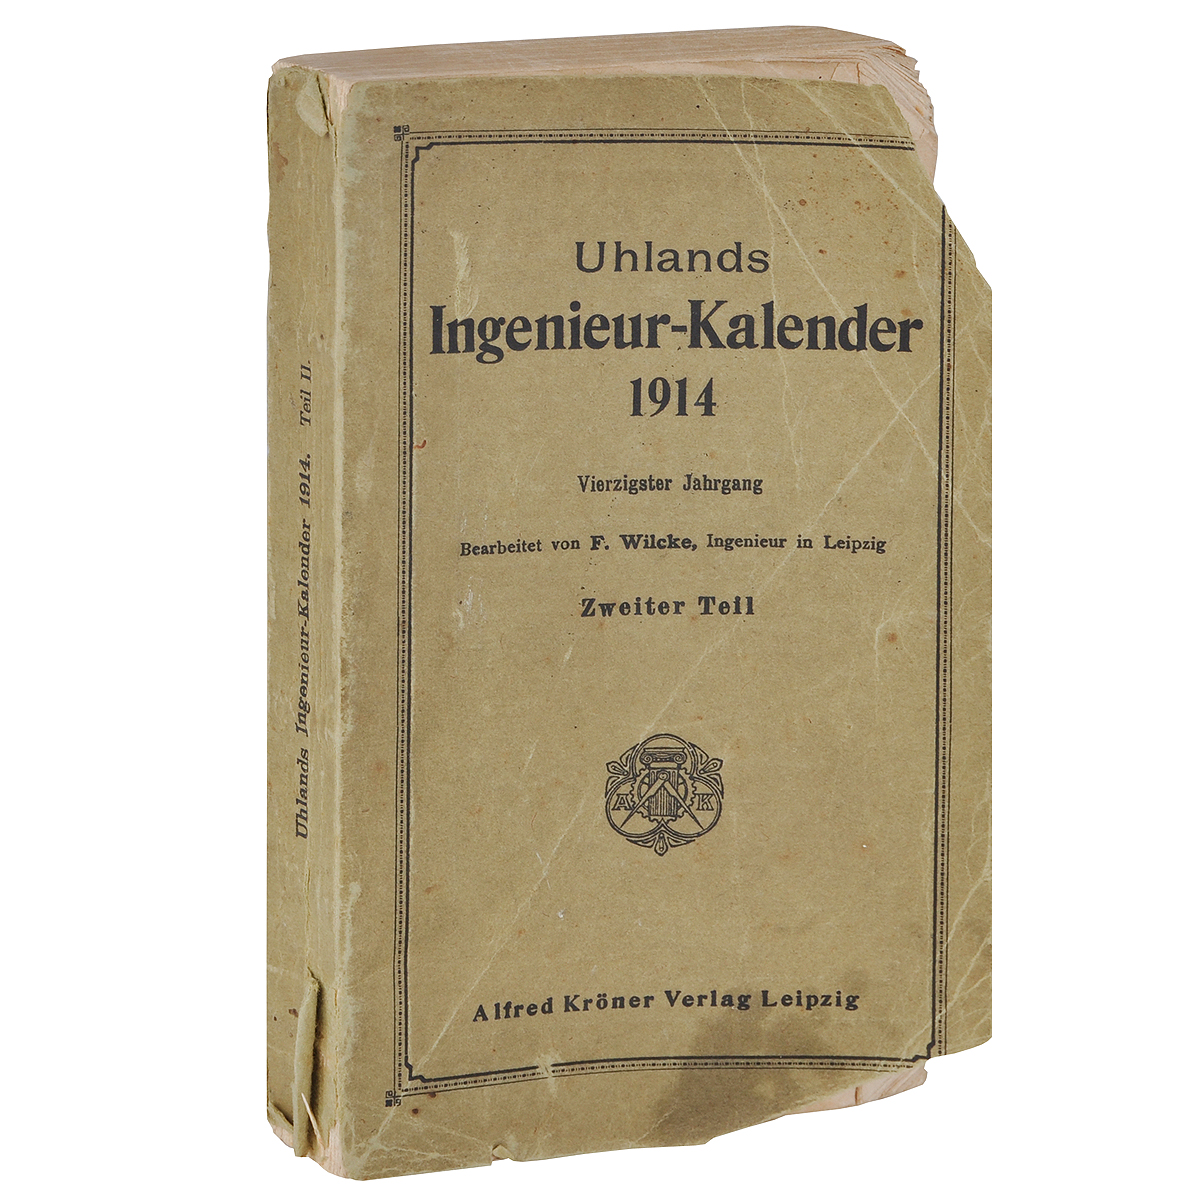 Uhlands Ingenieur-Kalender 1914